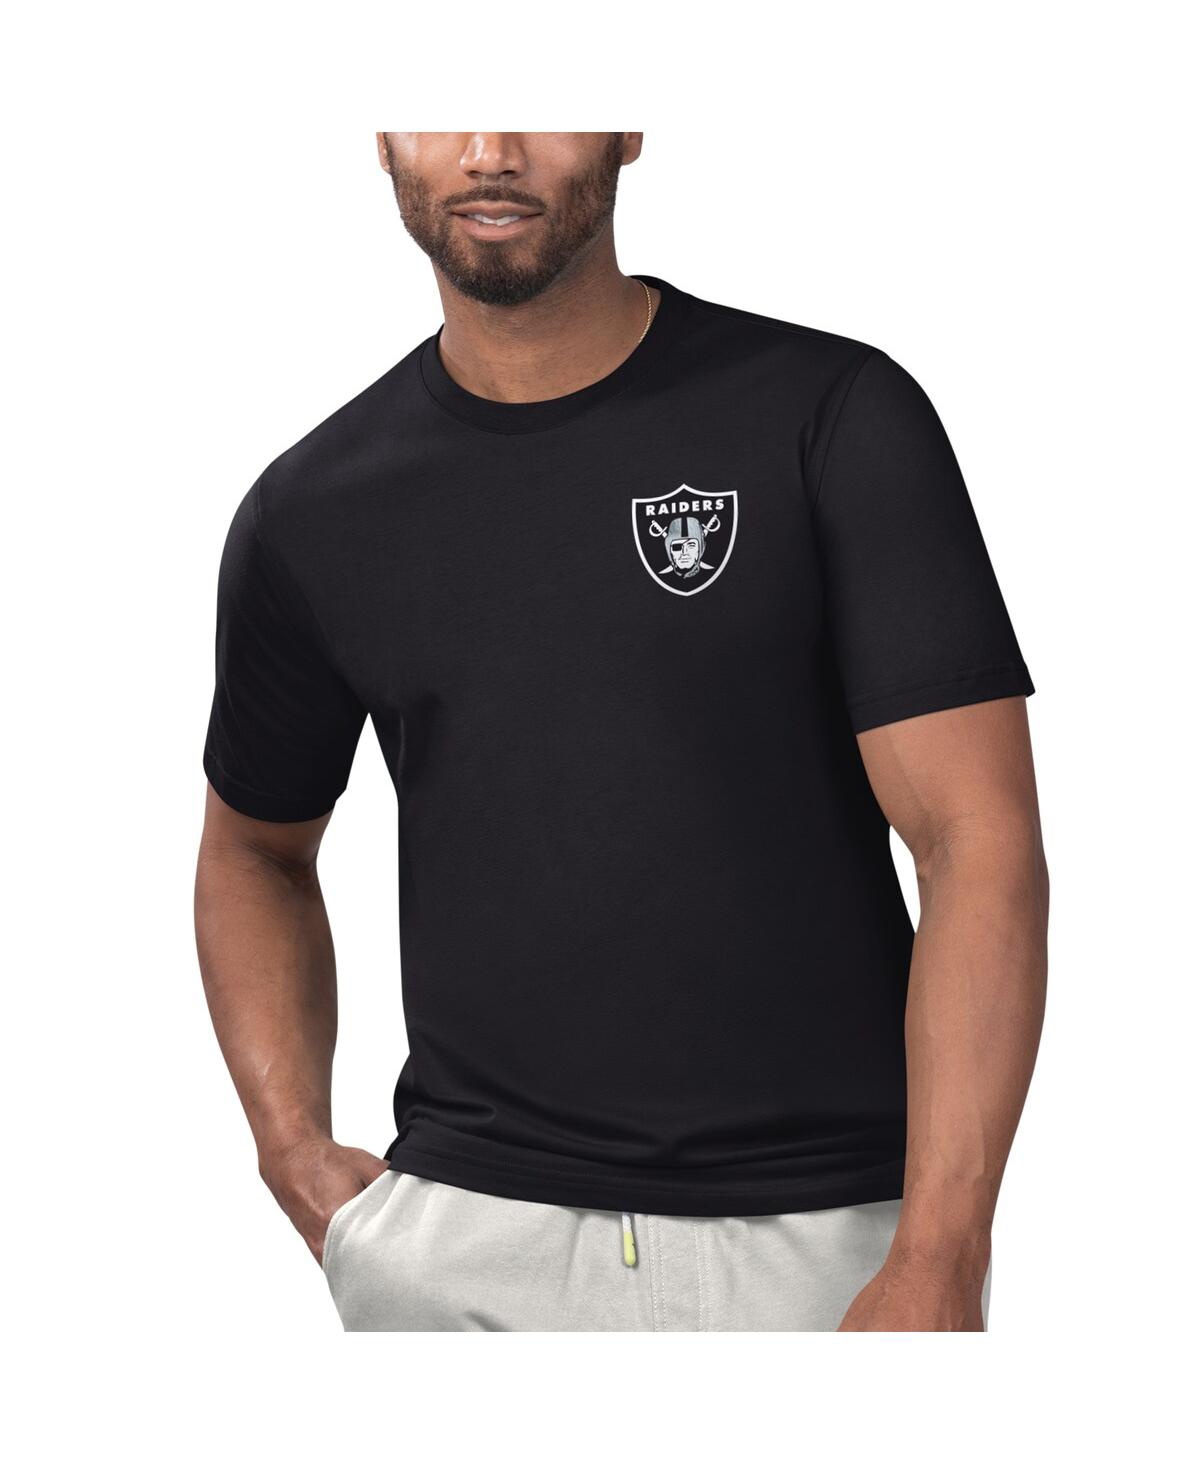 Men's Margaritaville Black Las Vegas Raiders Licensed to Chill T-shirt - Black